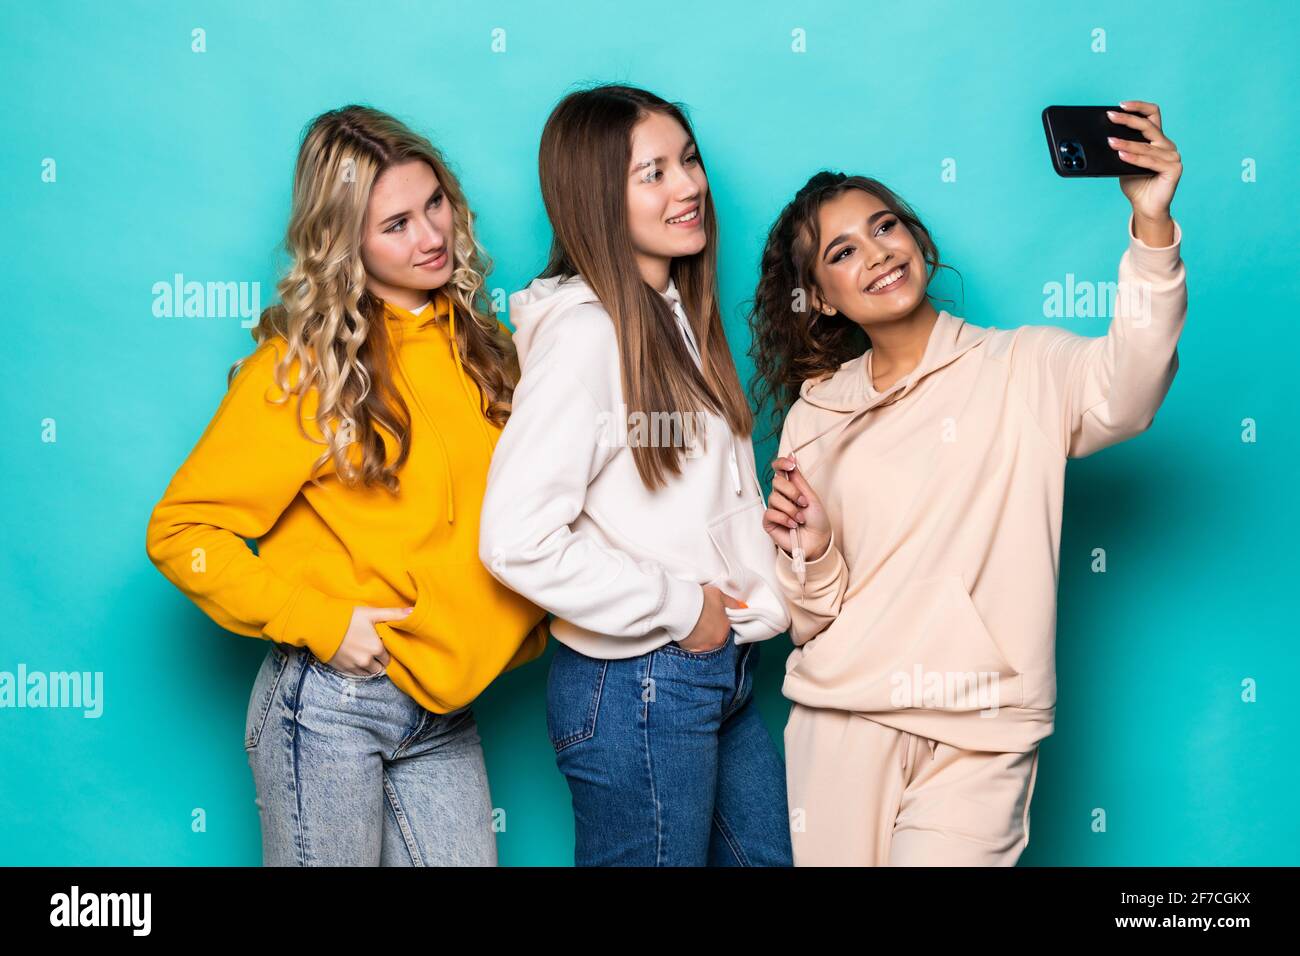 Giovani tre ragazze multietniche amici prendere un selfie da fotocamera posa su sfondo turchese Foto Stock